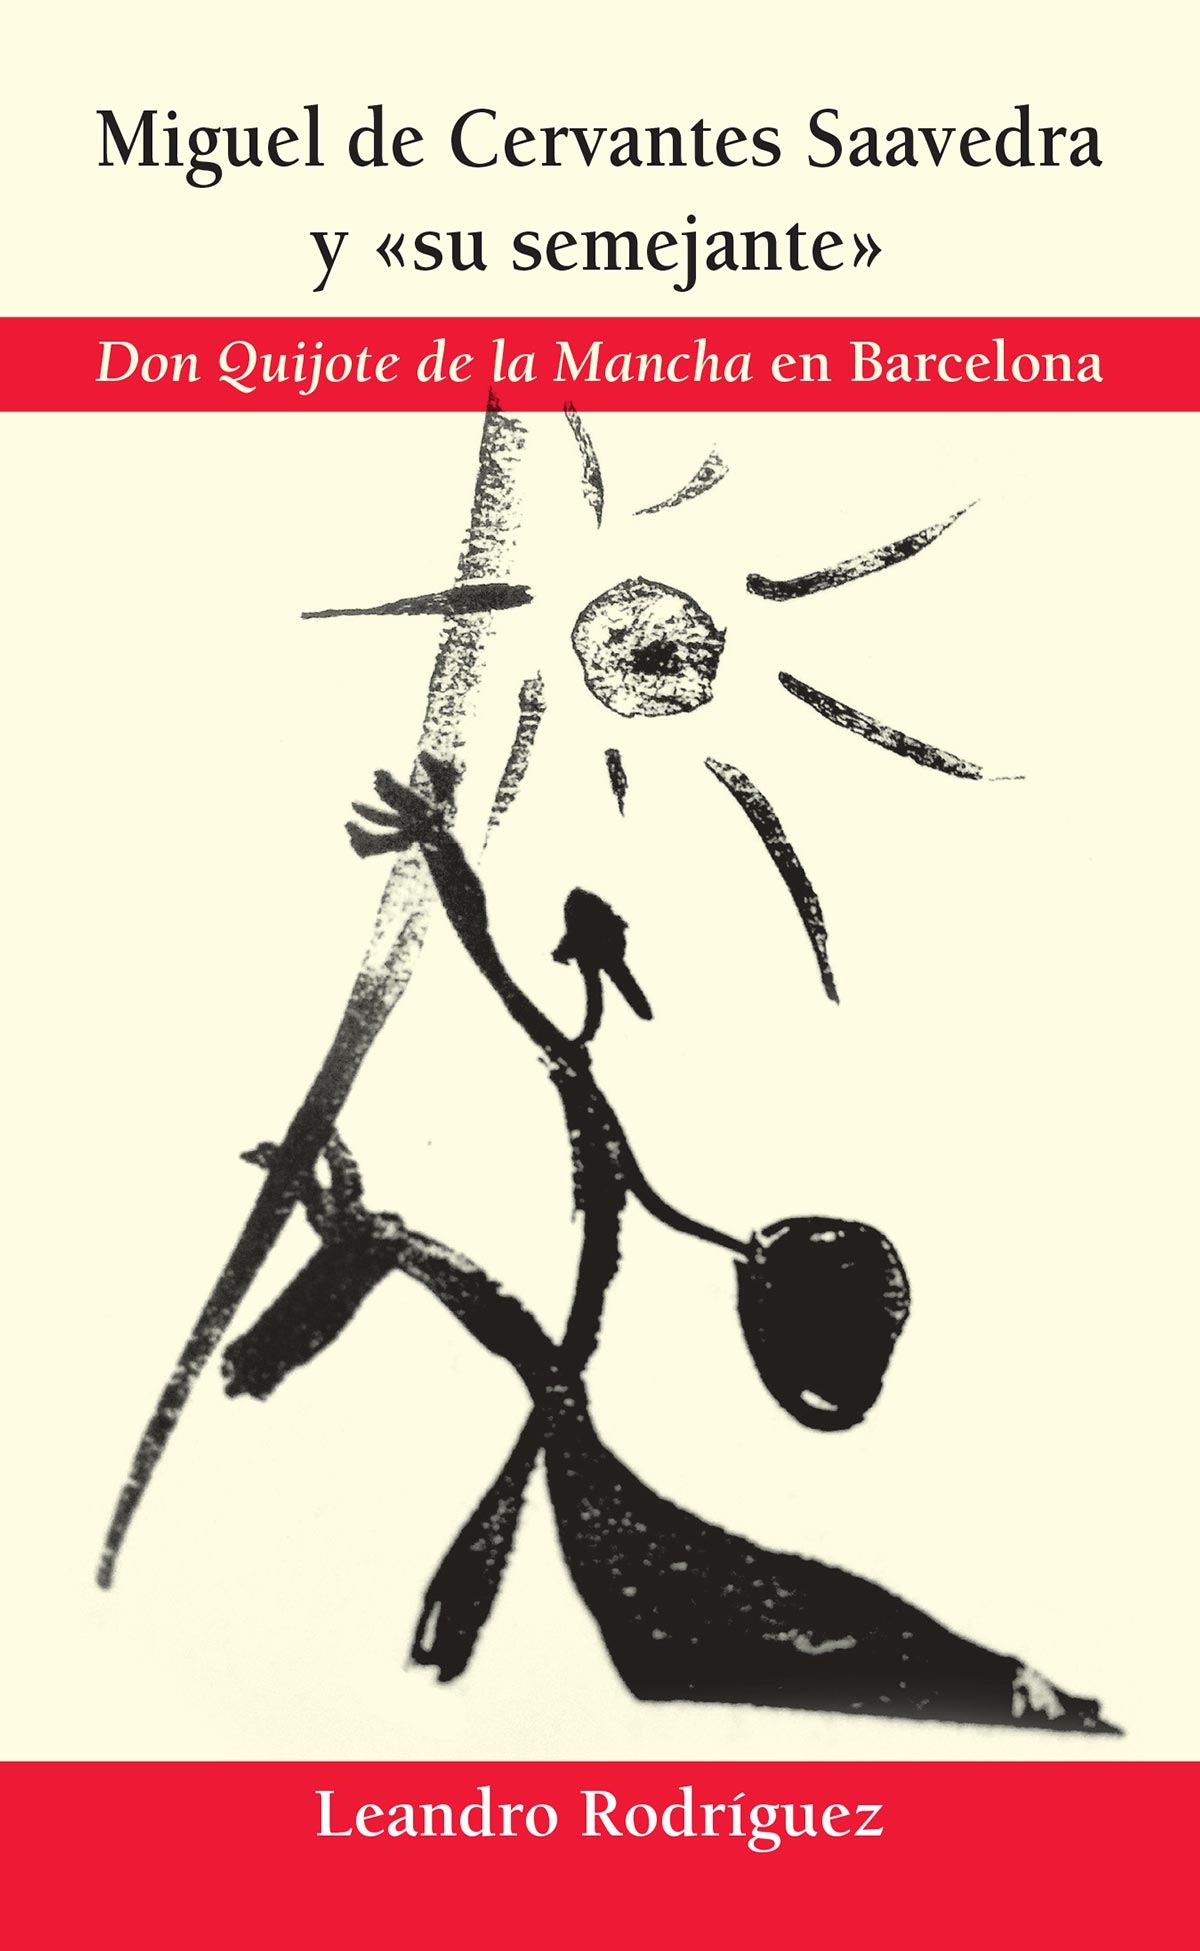 Miguel de cervantes saavedra semejante Don Quijote Mancha Barcelona Leandro Rodriguez Editorial Semuret